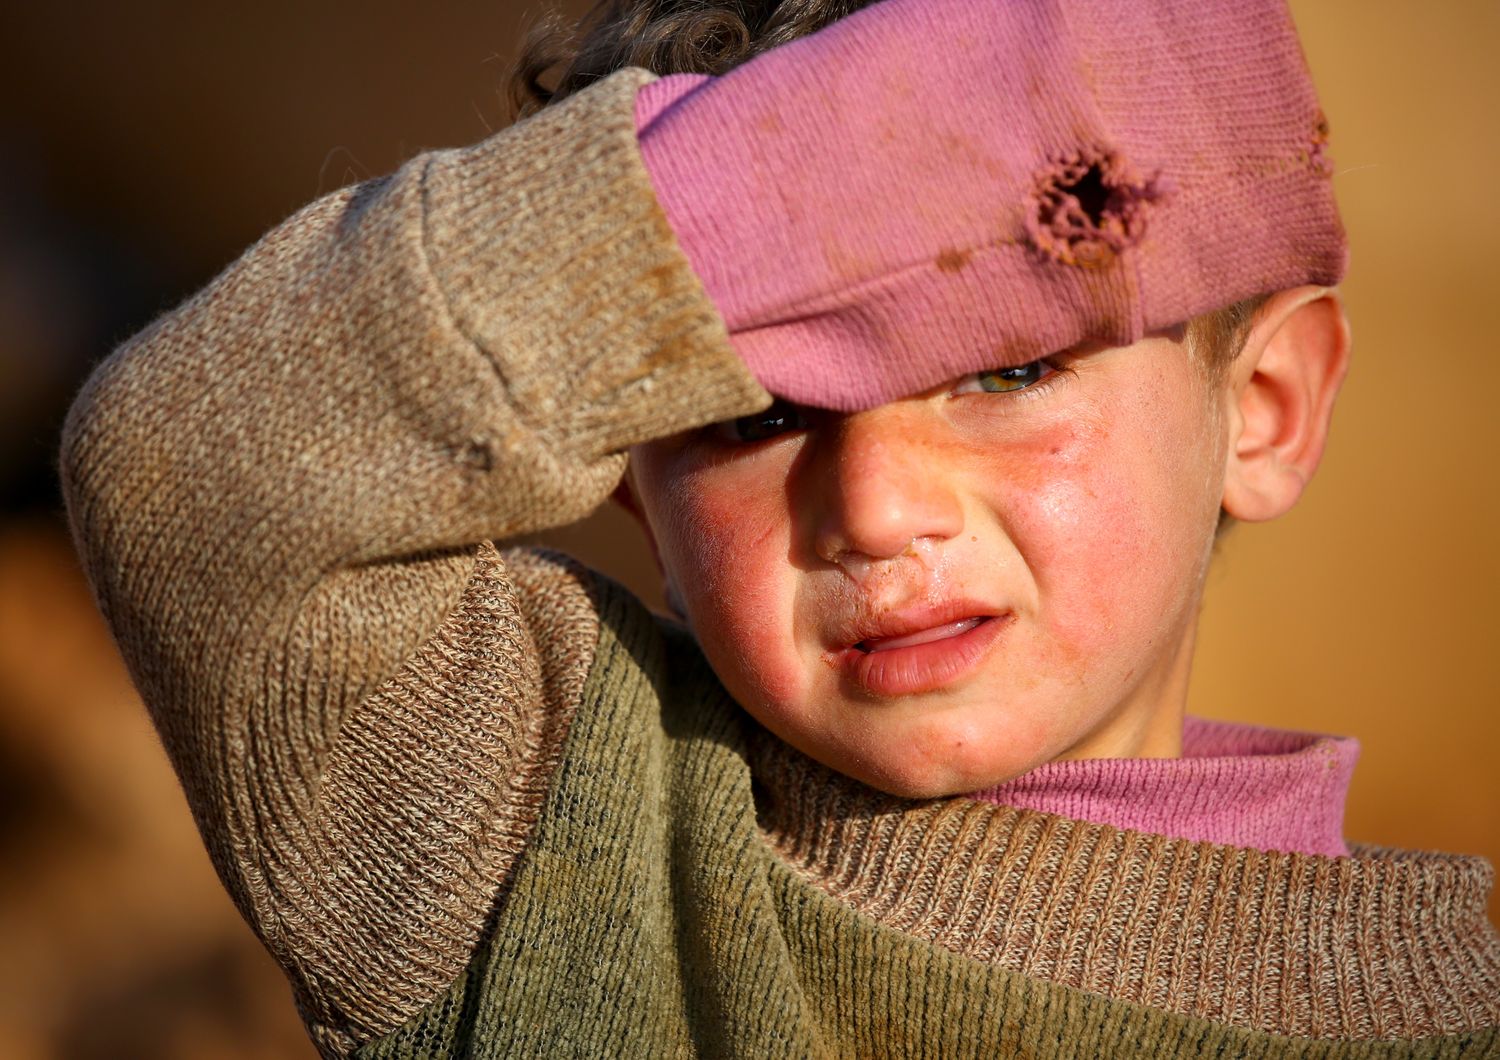 Cosa resta nella mente dei bambini siriani? Abbiamo raccolto 458 voci